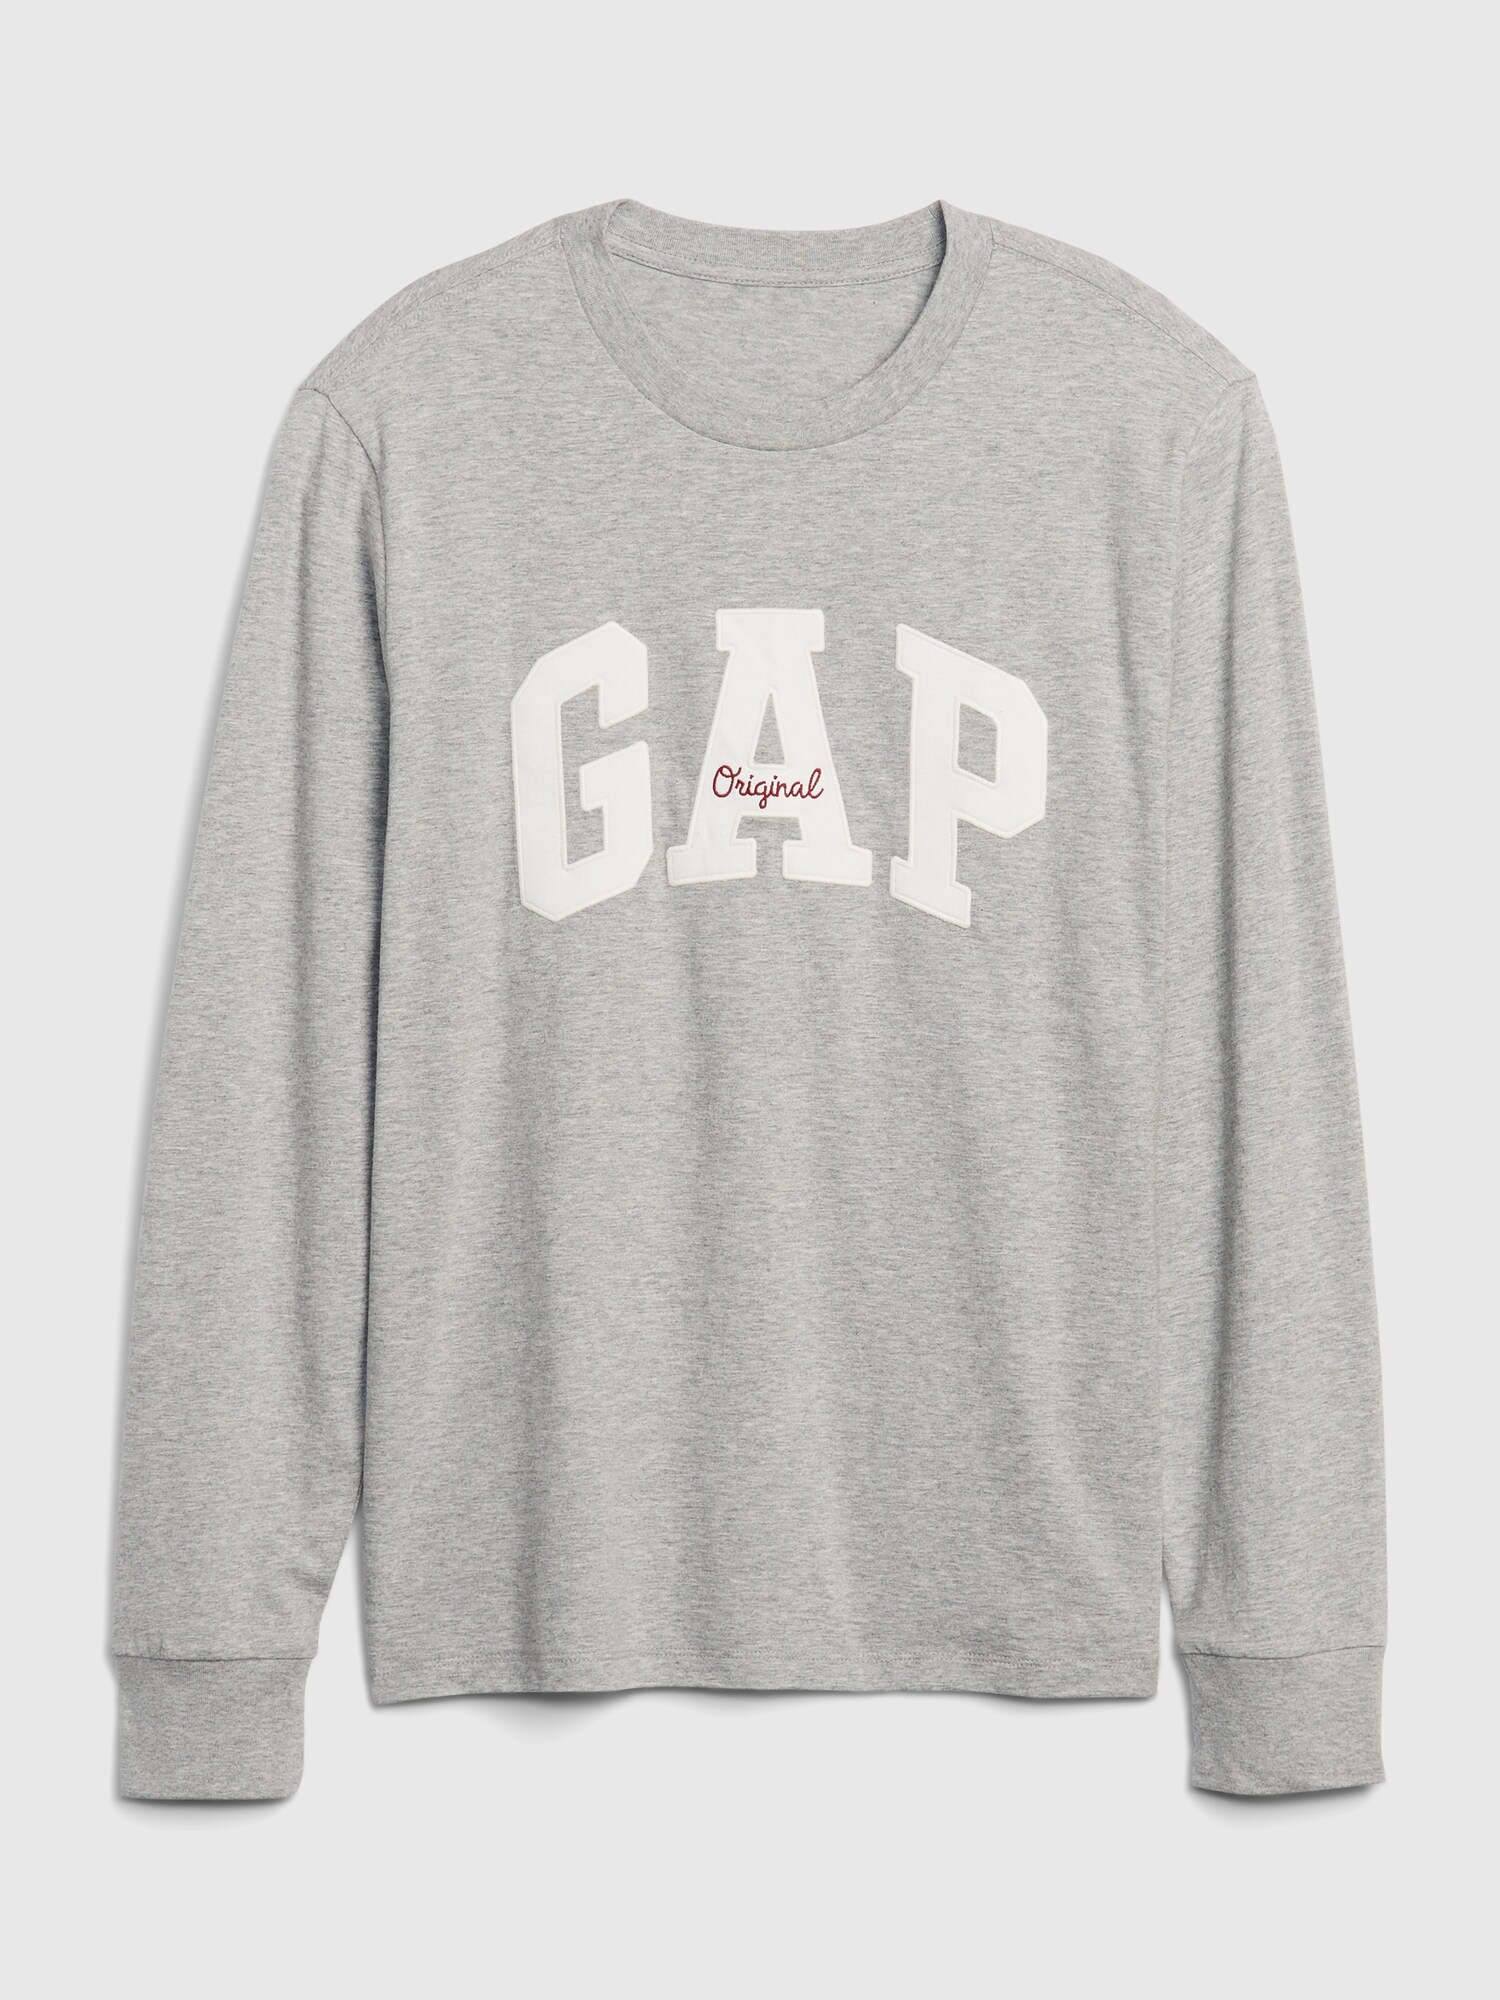 Gap Logo Uzun Kollu T-Shirt. 8